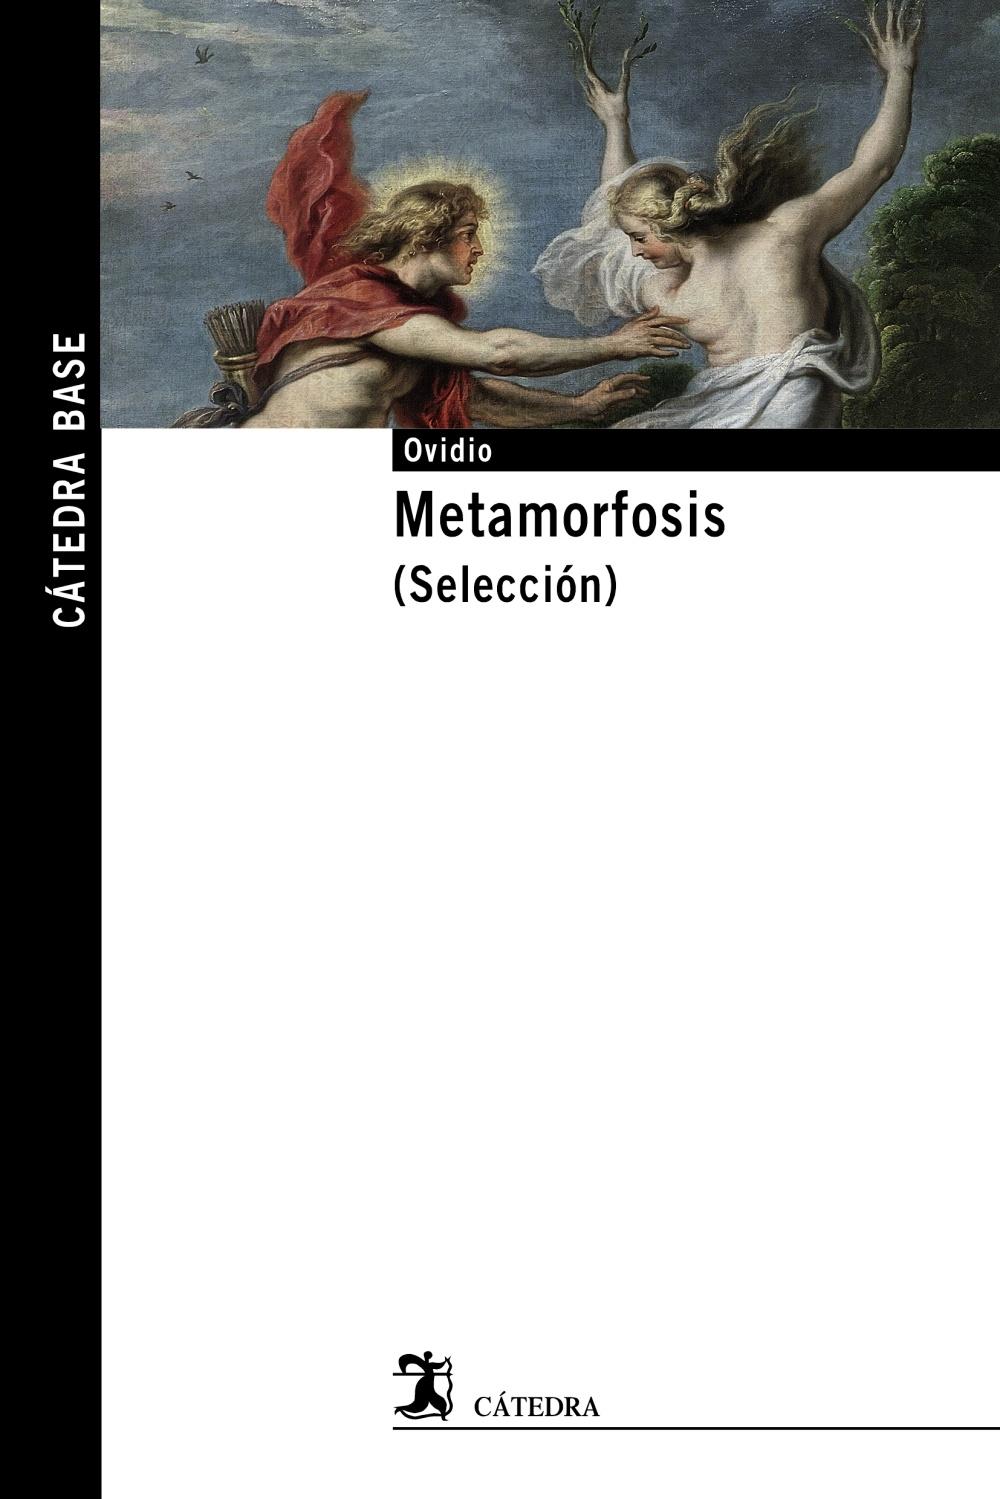 Metamorfosis "(Selección)". 